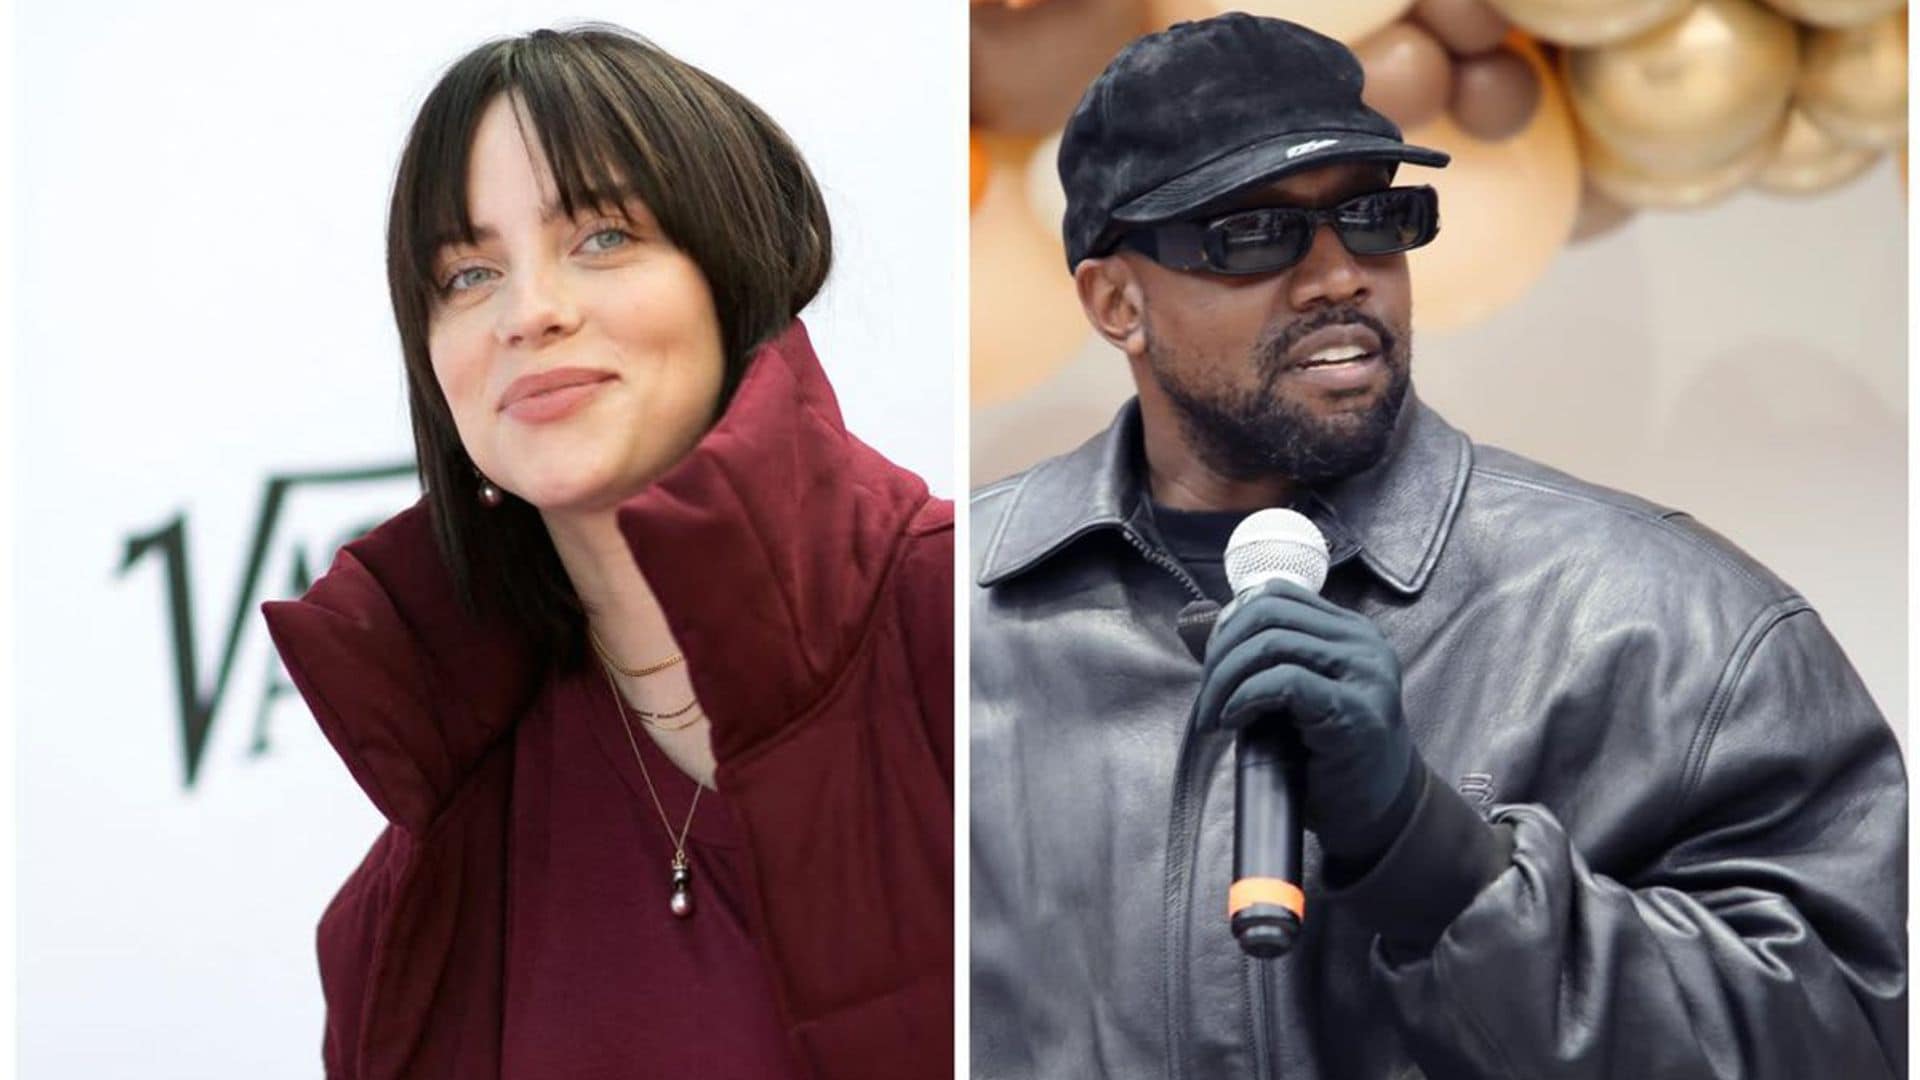 Coachella 2022: Billie Eilish and Kanye West set to headline the highly anticipated festival